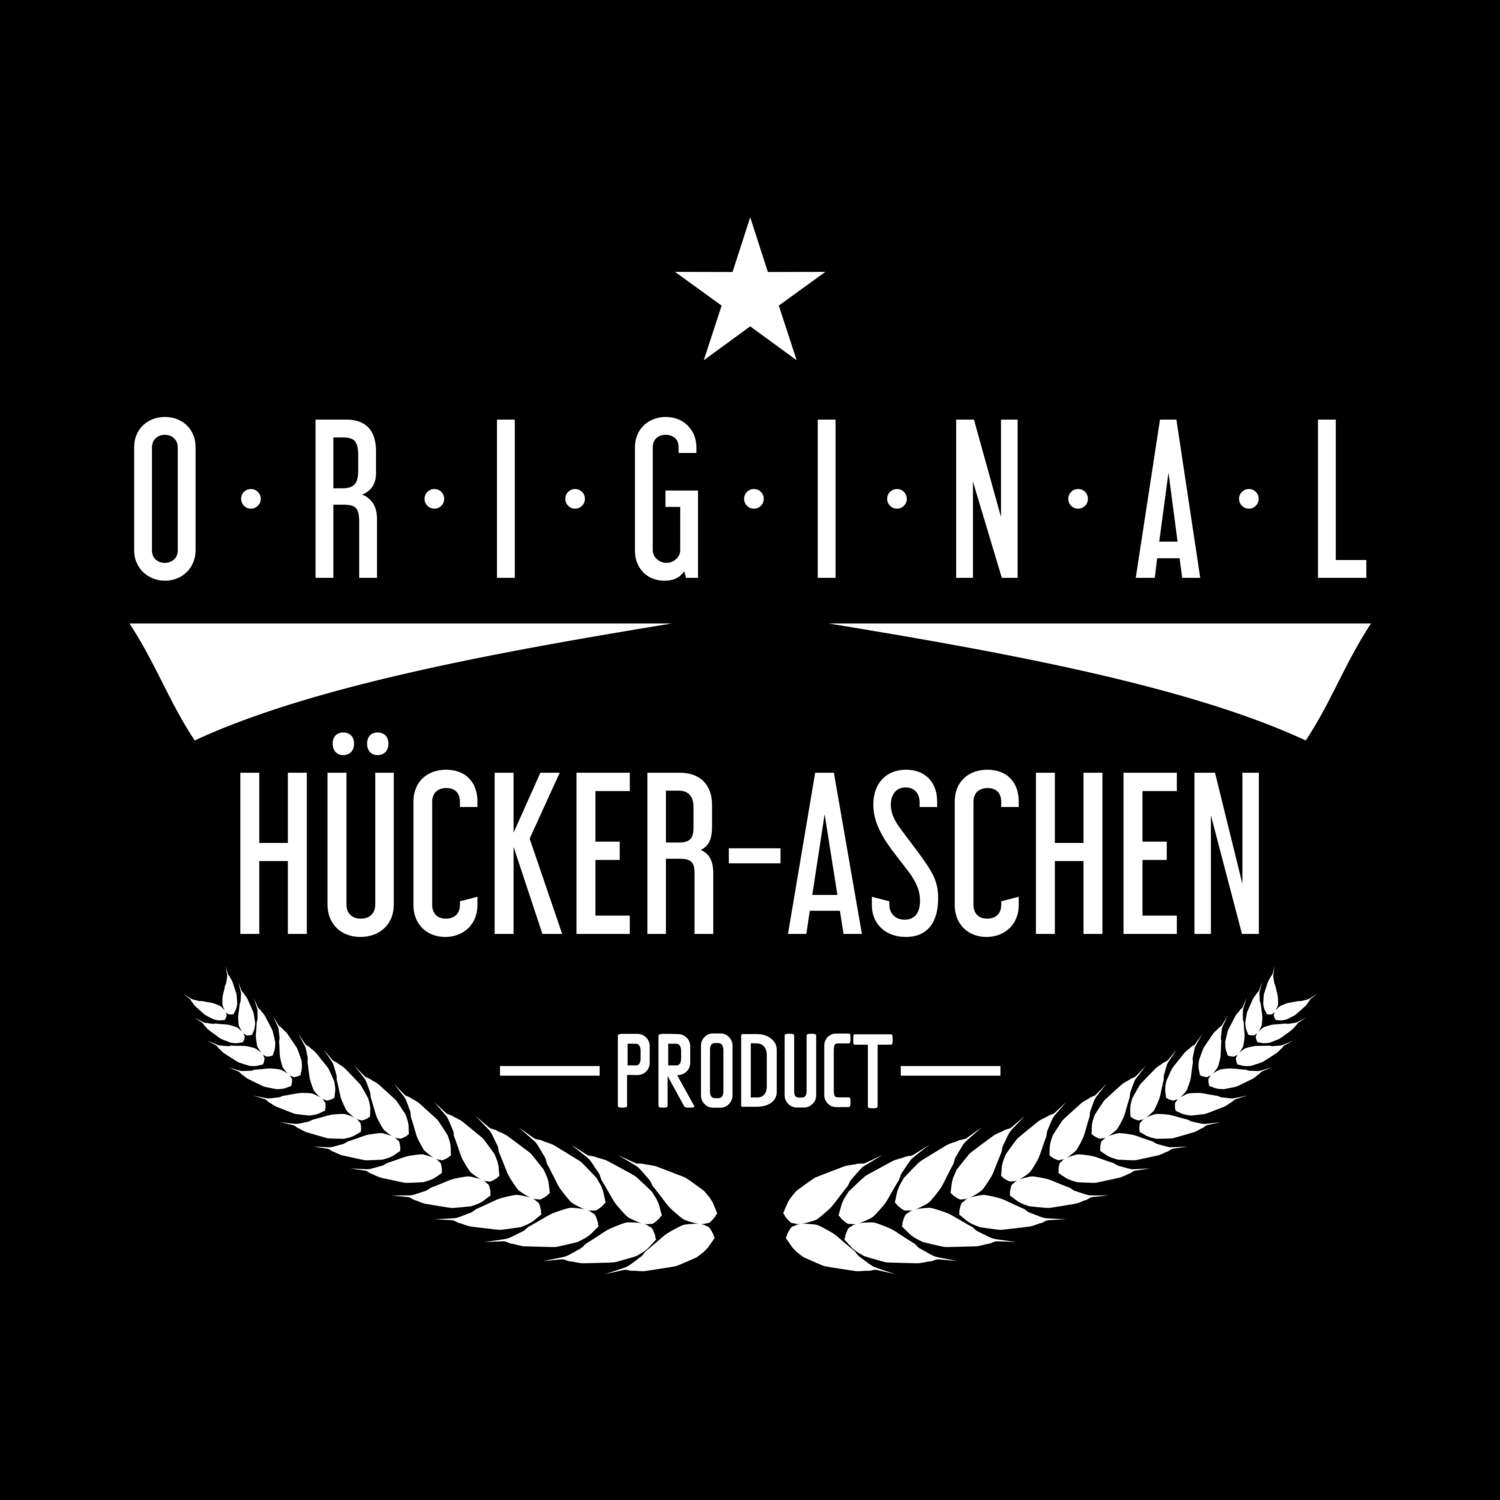 Hücker-Aschen T-Shirt »Original Product«